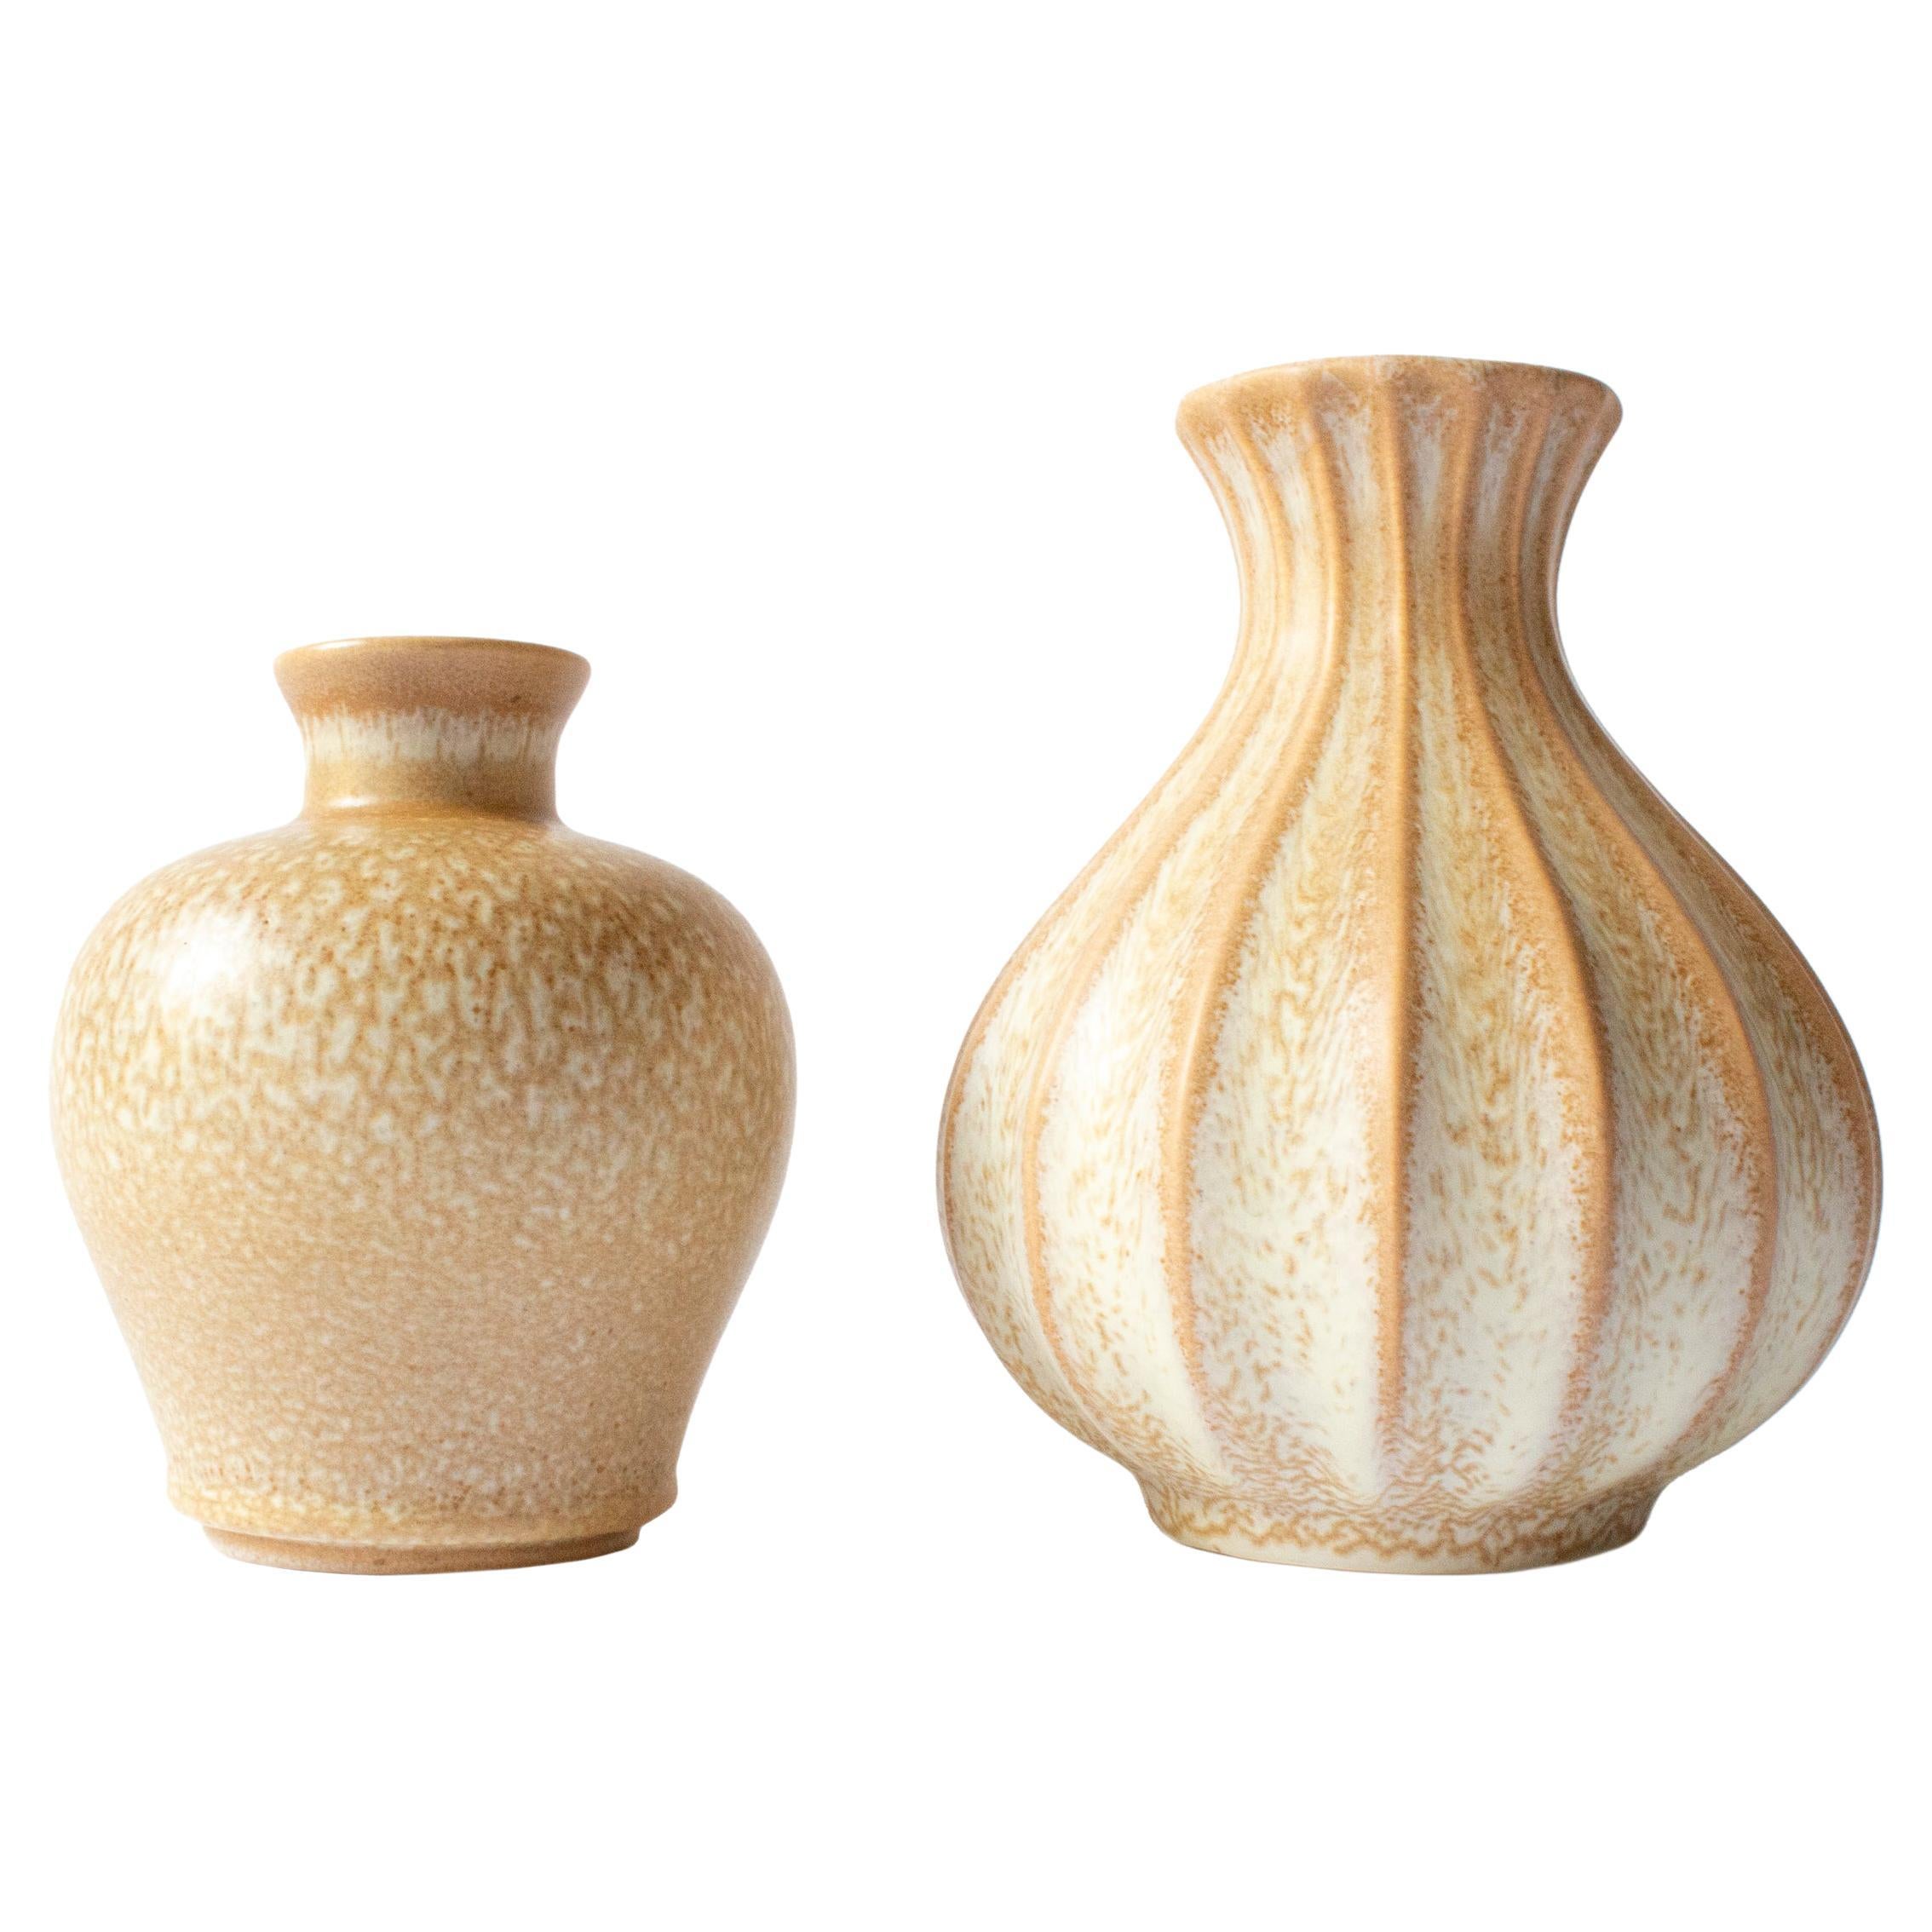 Deux vases modernes scandinaves « Topas » d'Ewald Dahlskog pour Bo Fajans